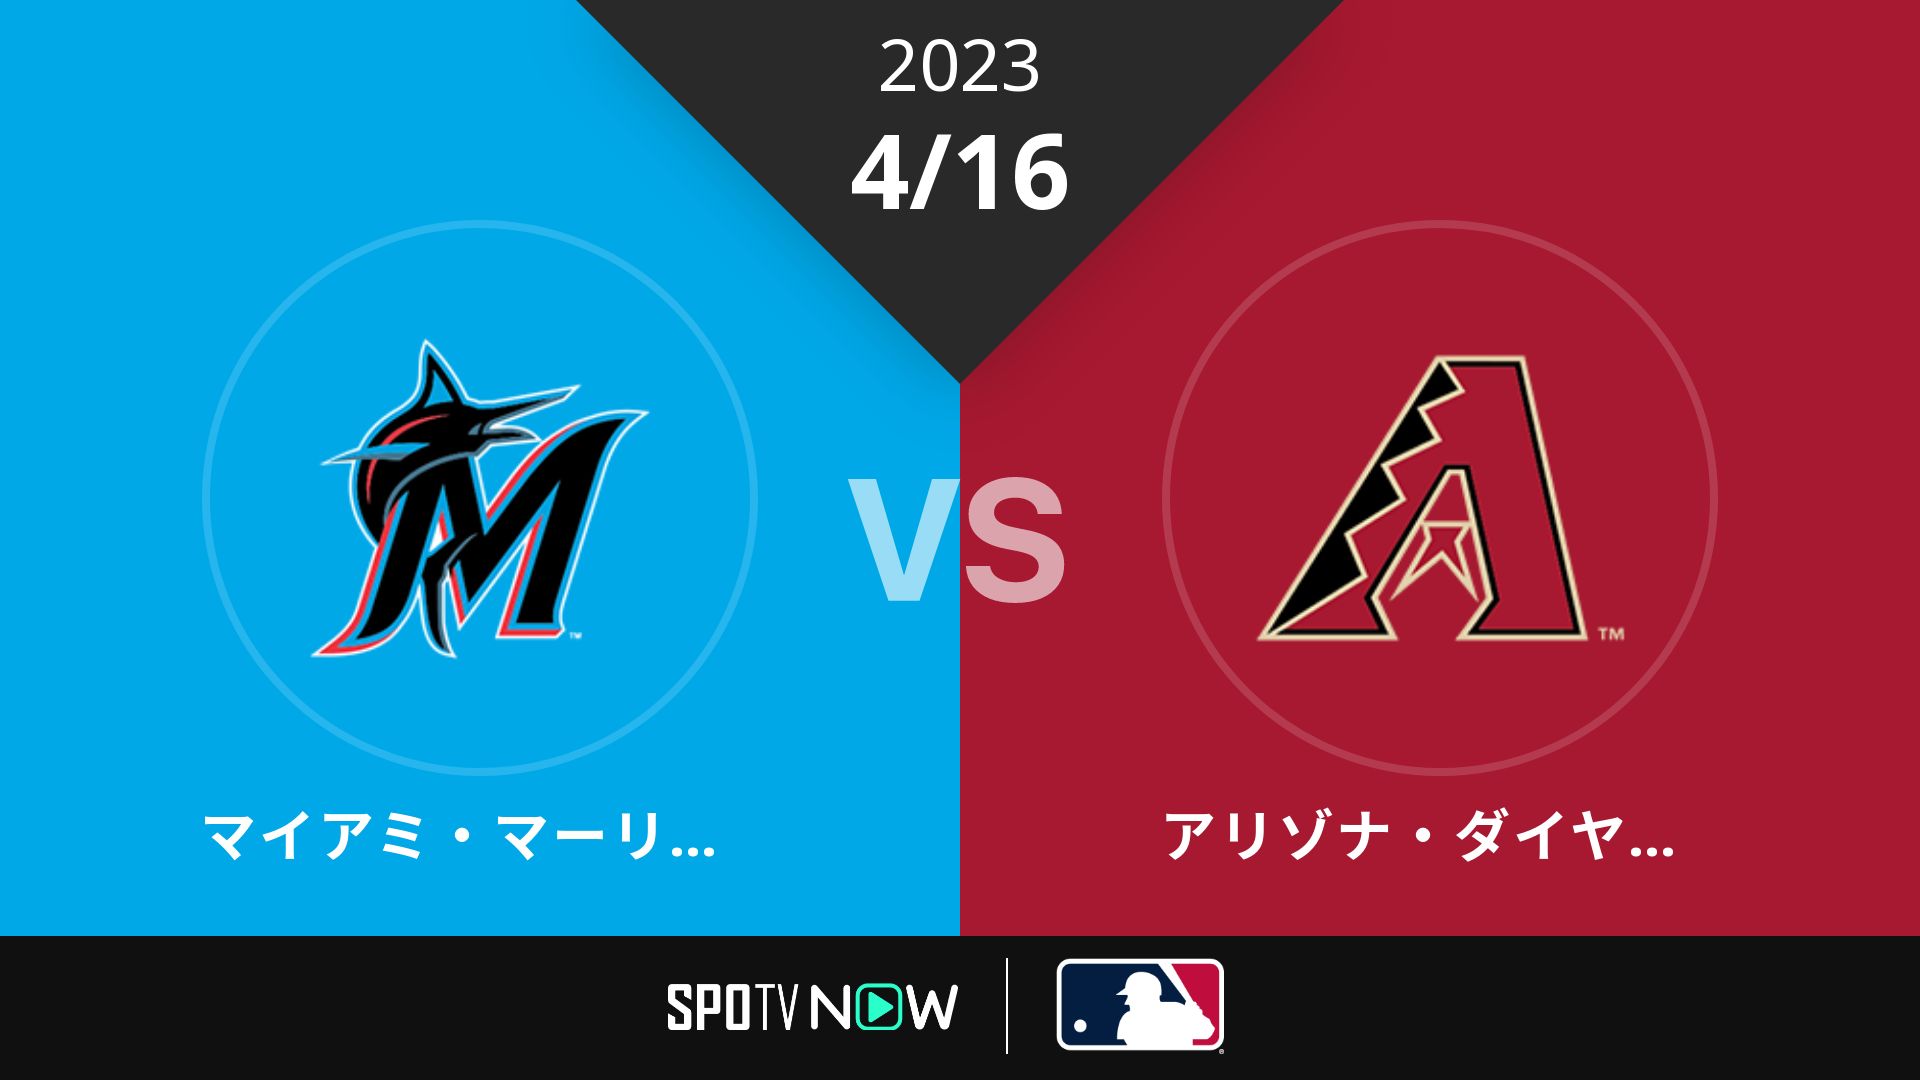 2023/4/16 マーリンズ vs Dバックス [MLB]